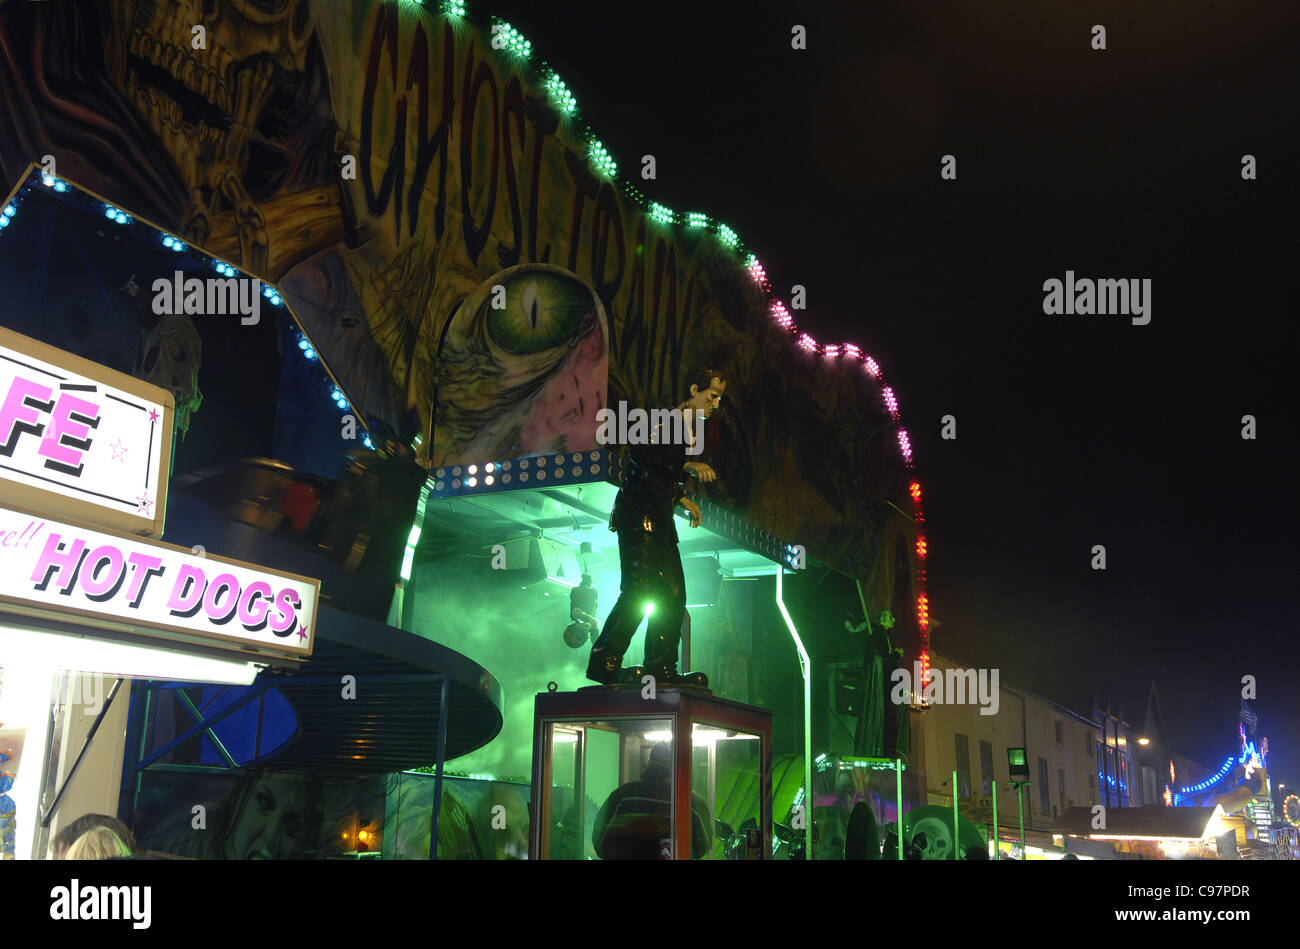 Die "Geisterbahn" Messegelände fahren in Loughborough Street fair. Scary Figuren, Beleuchtung und lebendigere Farben die Öffentlichkeit anzuziehen. Stockfoto